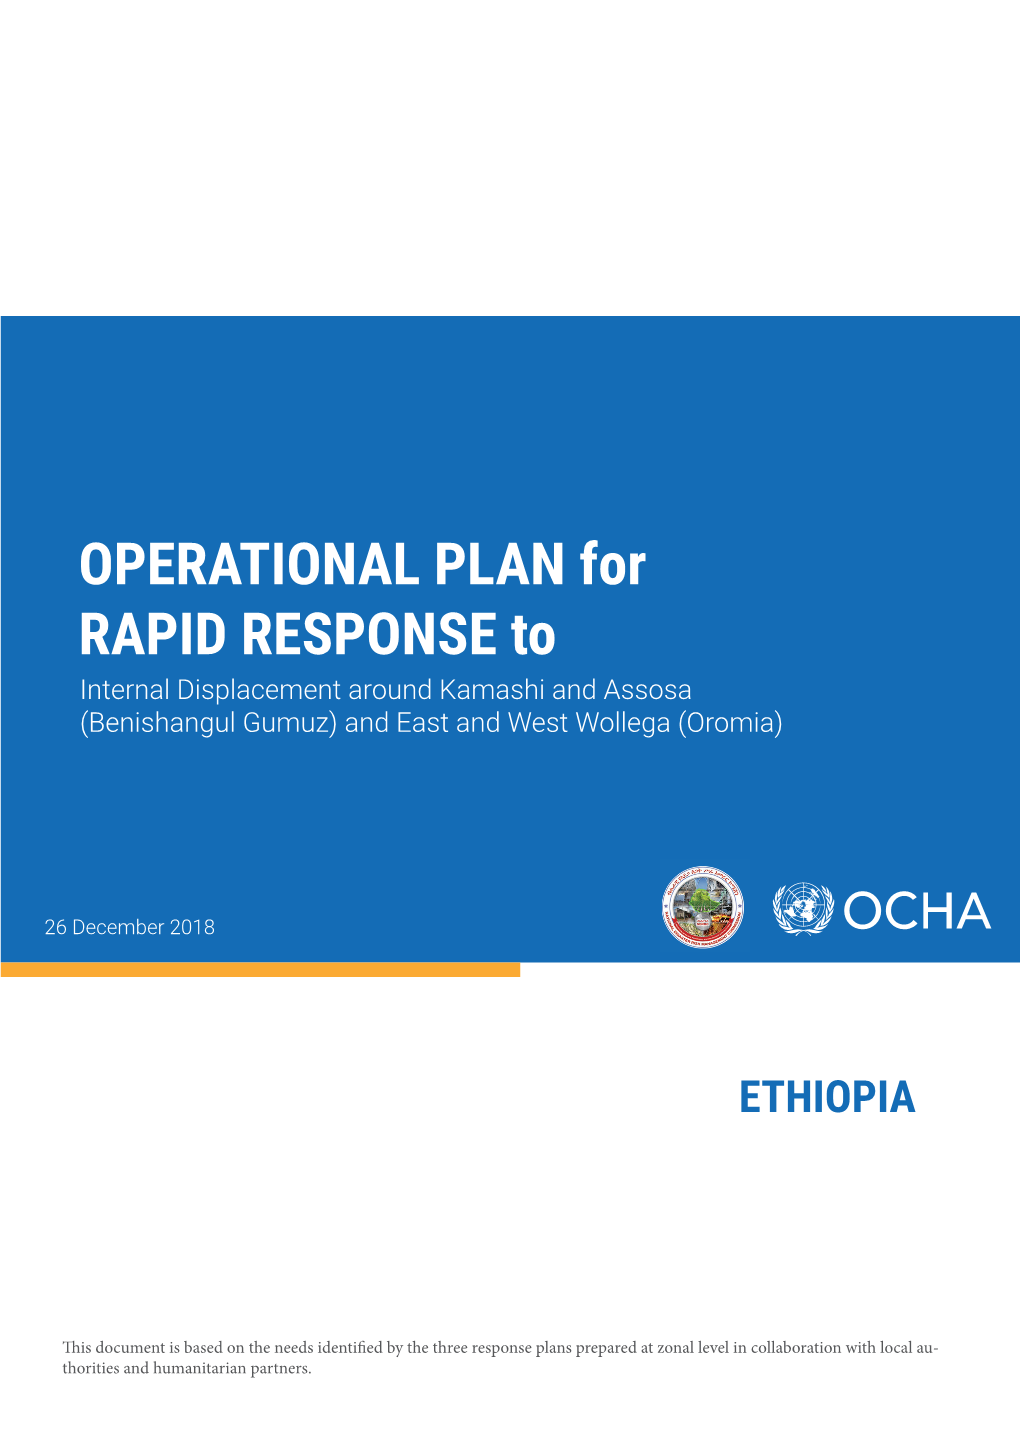 Operational-Plan-For-Rapid-Response-To-Kamashi-And-Assosa-8.Pdf (Anglais (English))